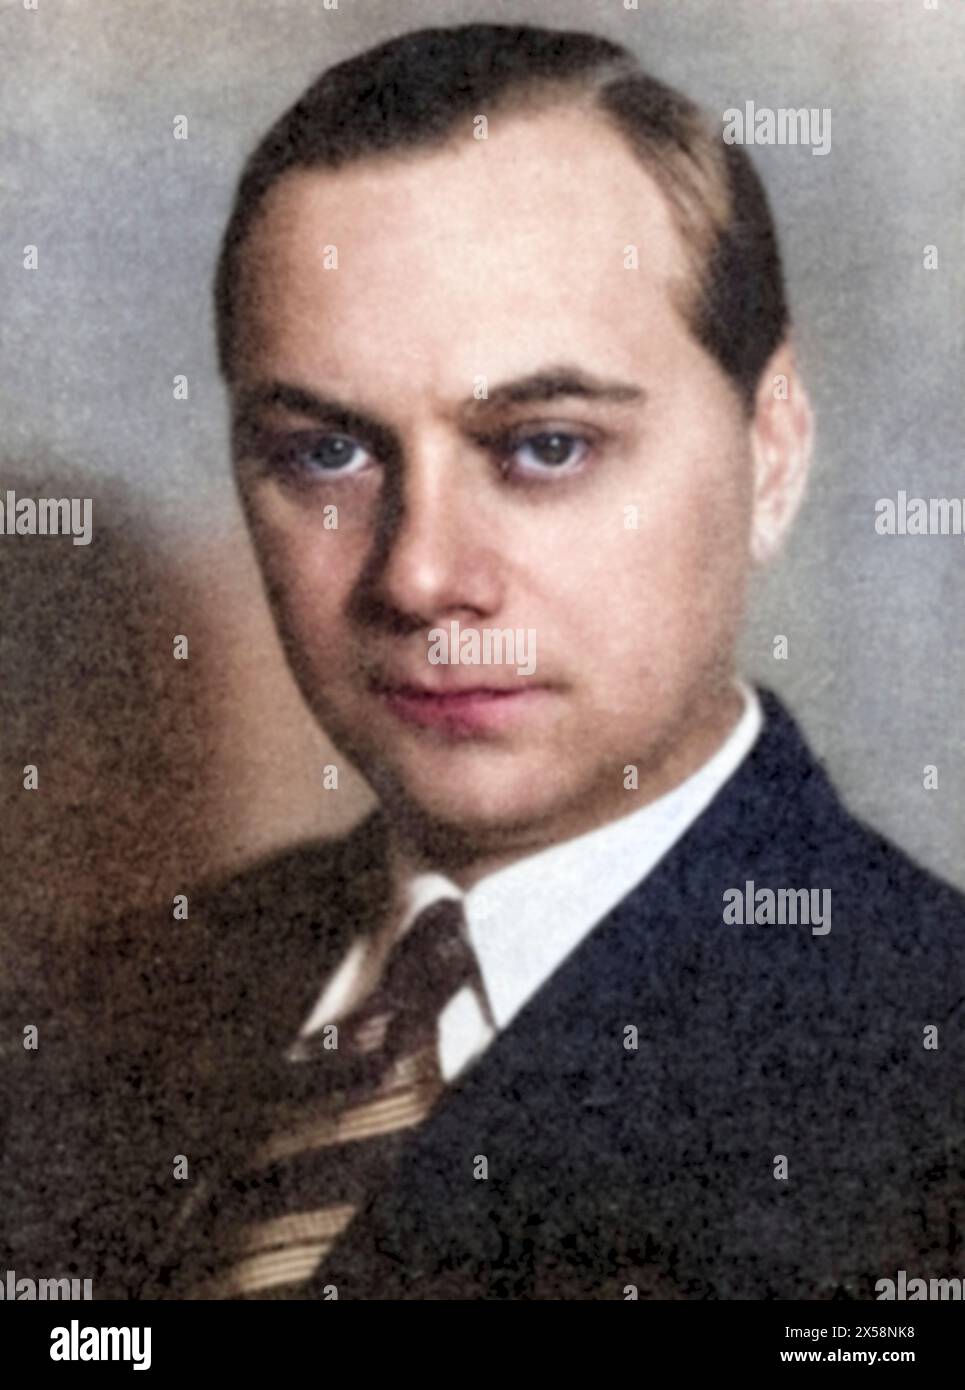 Rosenberg, Alfred, 13.1.1893 - 16.10.1946, homme politique allemand (NSDAP), chef du bureau politique des Affaires étrangères du NSDAP 1933 - 1945, USAGE ÉDITORIAL EXCLUSIF Banque D'Images